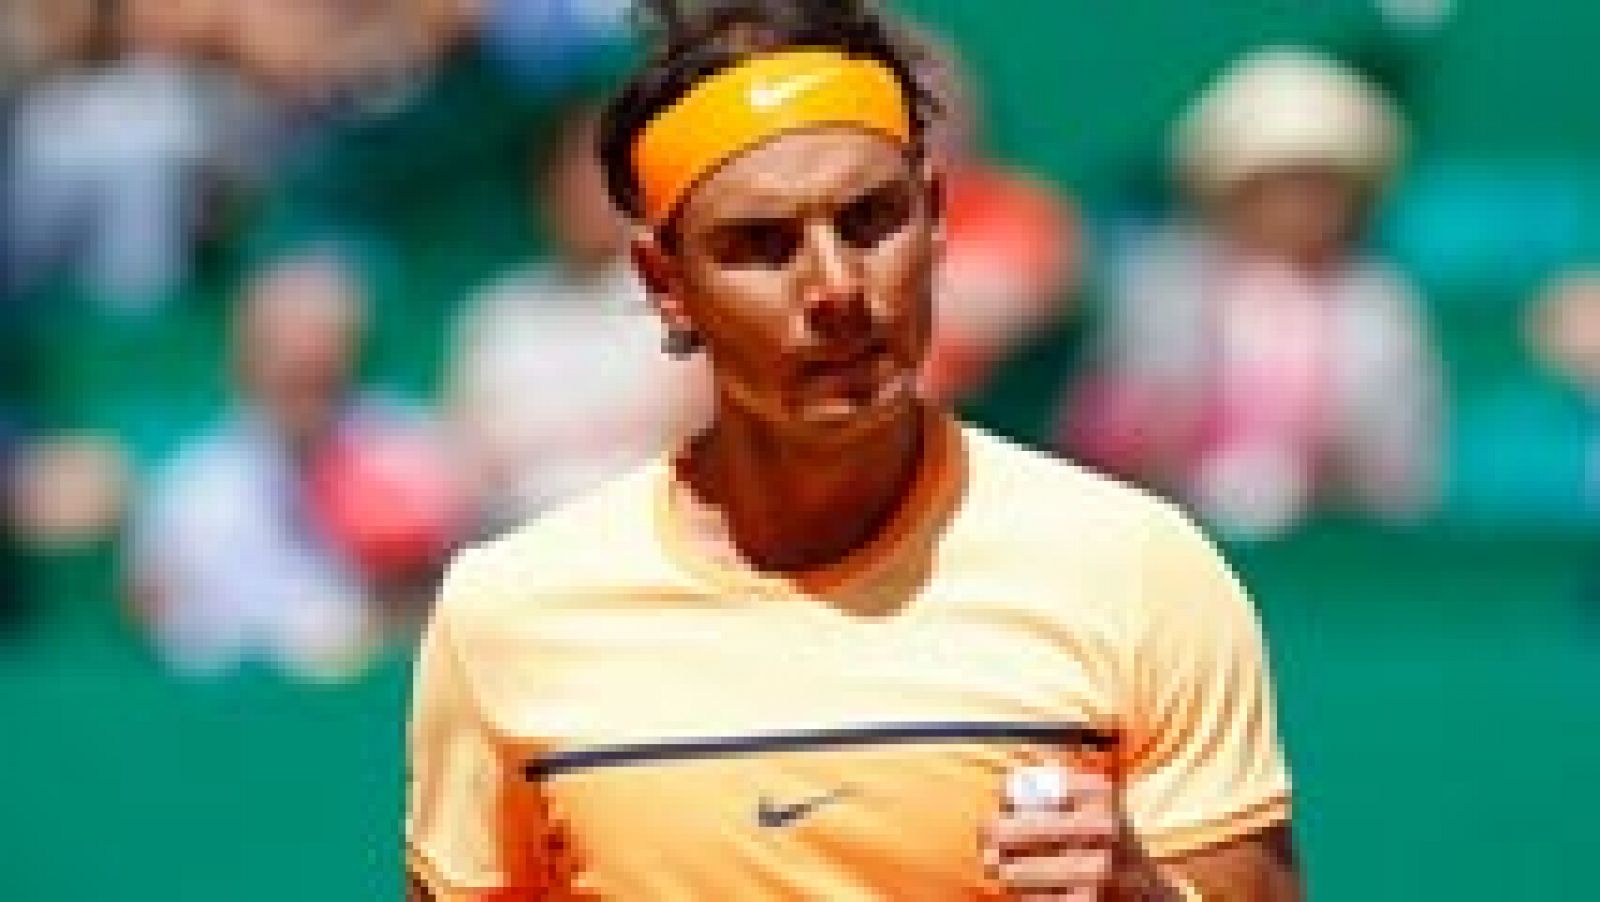 El tenista Rafael Nadal, abanderado del equipo español en la ceremonia inaugural de los Juegos Olímpicos de Río 2016, ha asegurado que no sabe "muy bien a qué nivel tenístico" va a llegar, aunque ha remarcado que para él "lo importante es estar y disfrutarlo" después de su ausencia en Londres 2012.